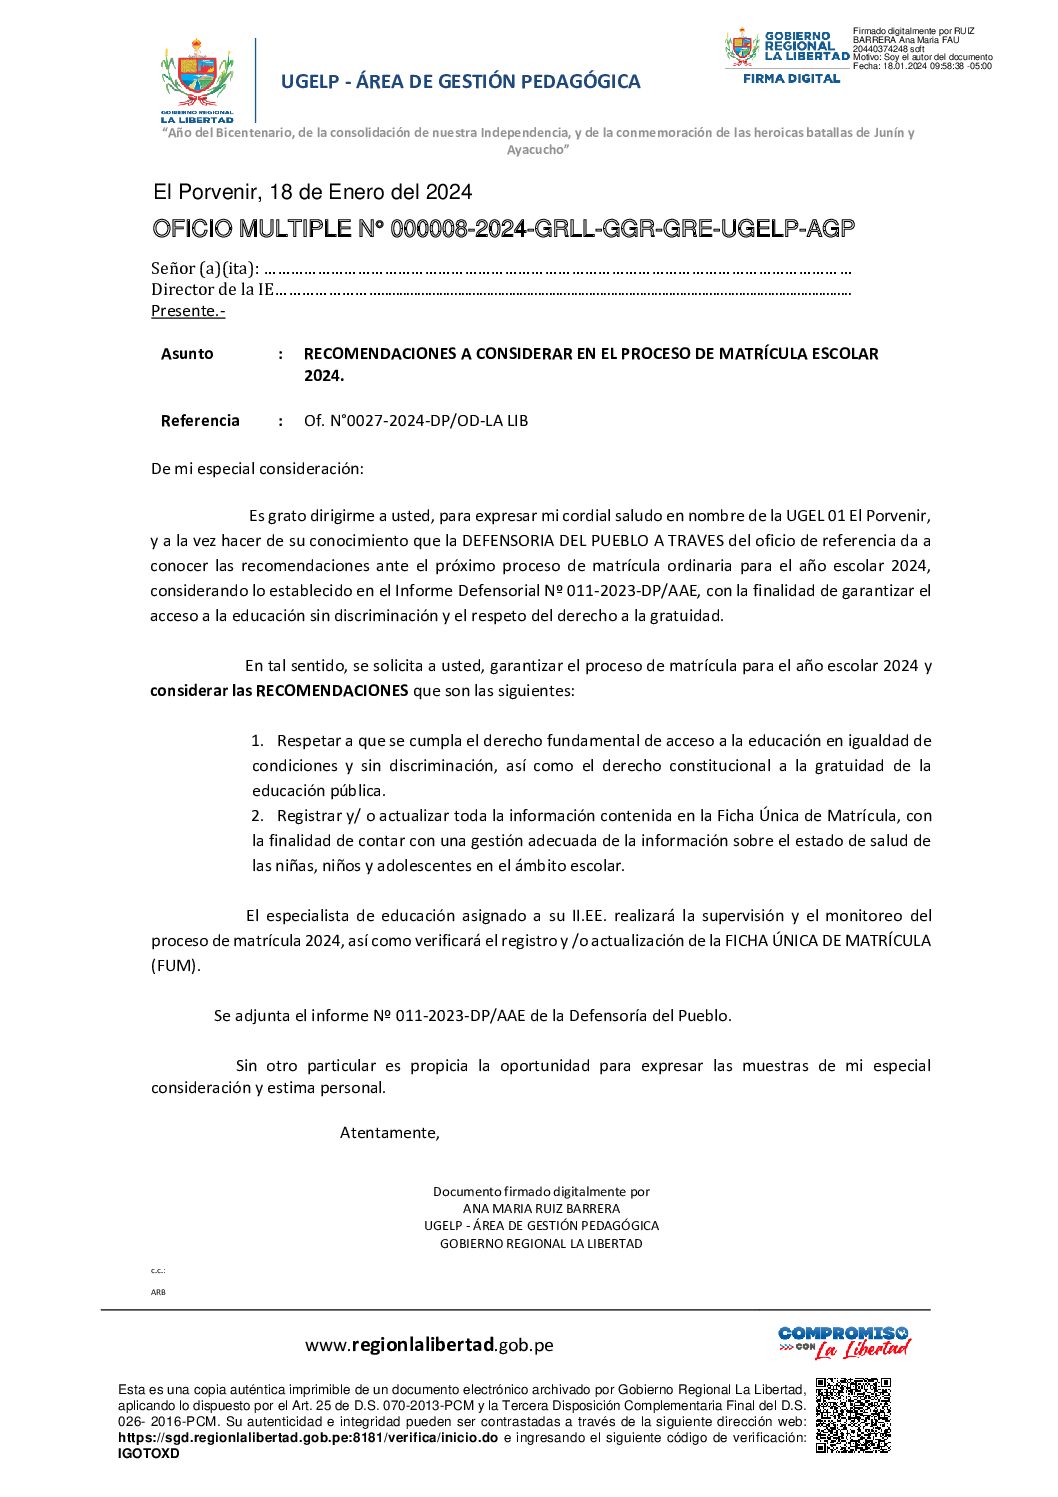 RECOMENDACIONES A CONSIDERAR EN EL PROCESO DE MATRÍCULA ESCOLAR 2024